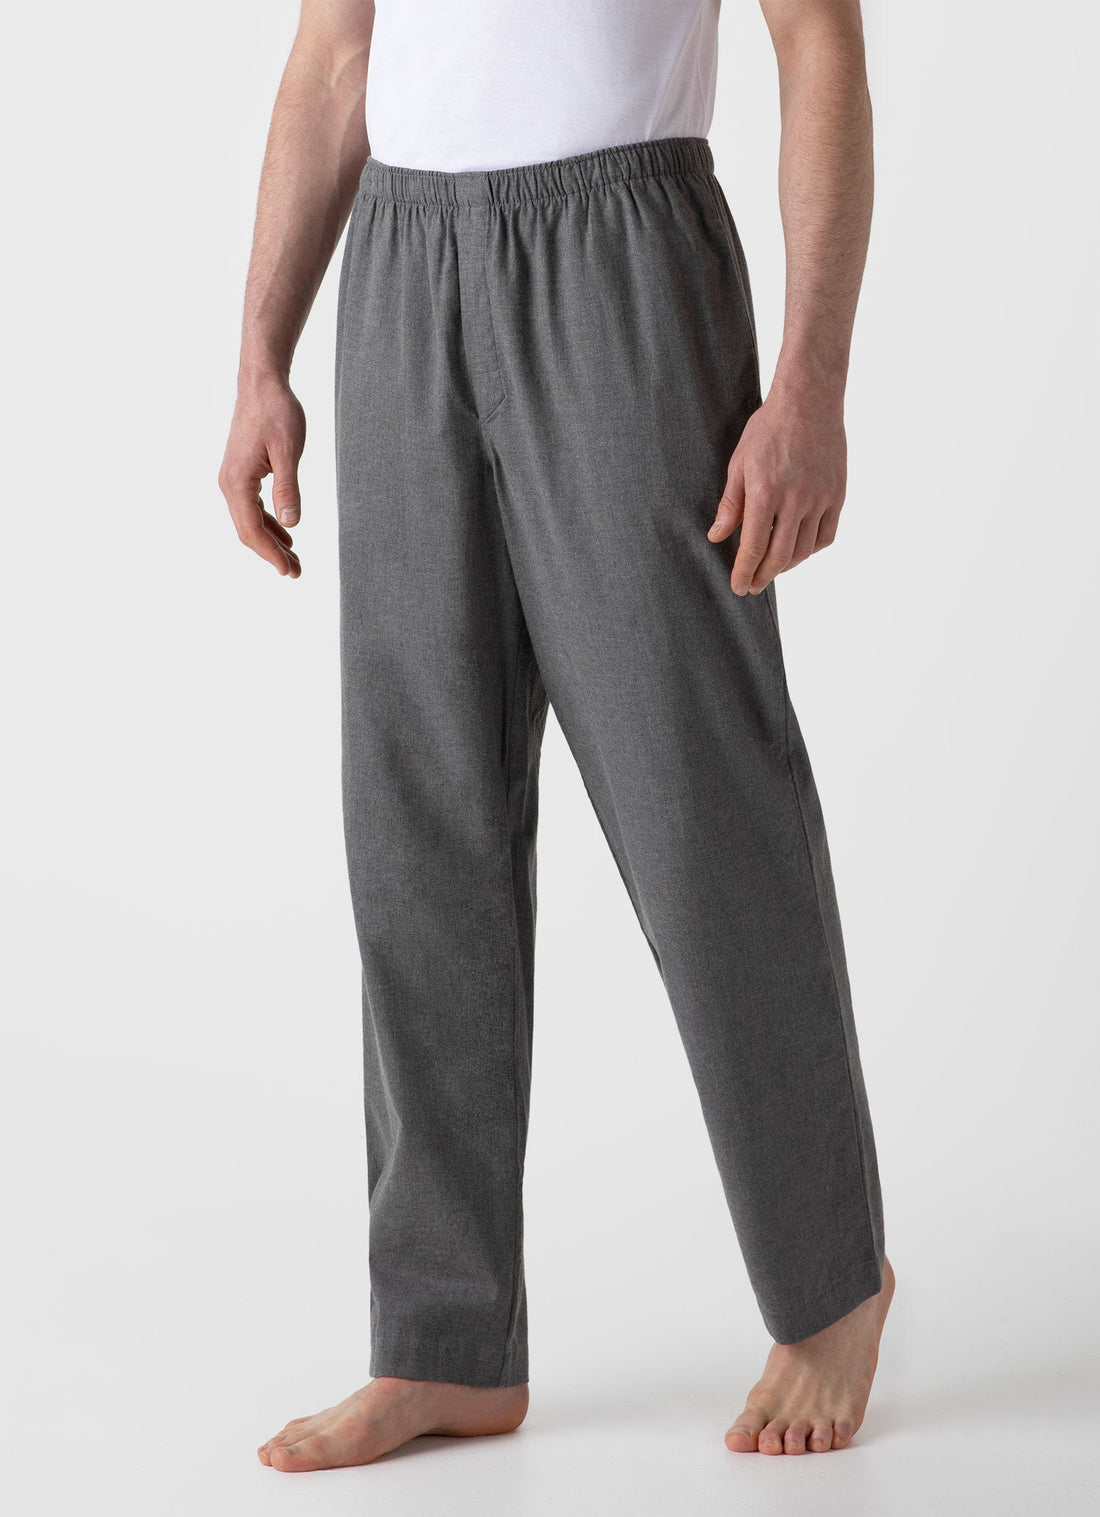 Buy Mens Pyjama Pants & Pajama Pants For Men - Apella